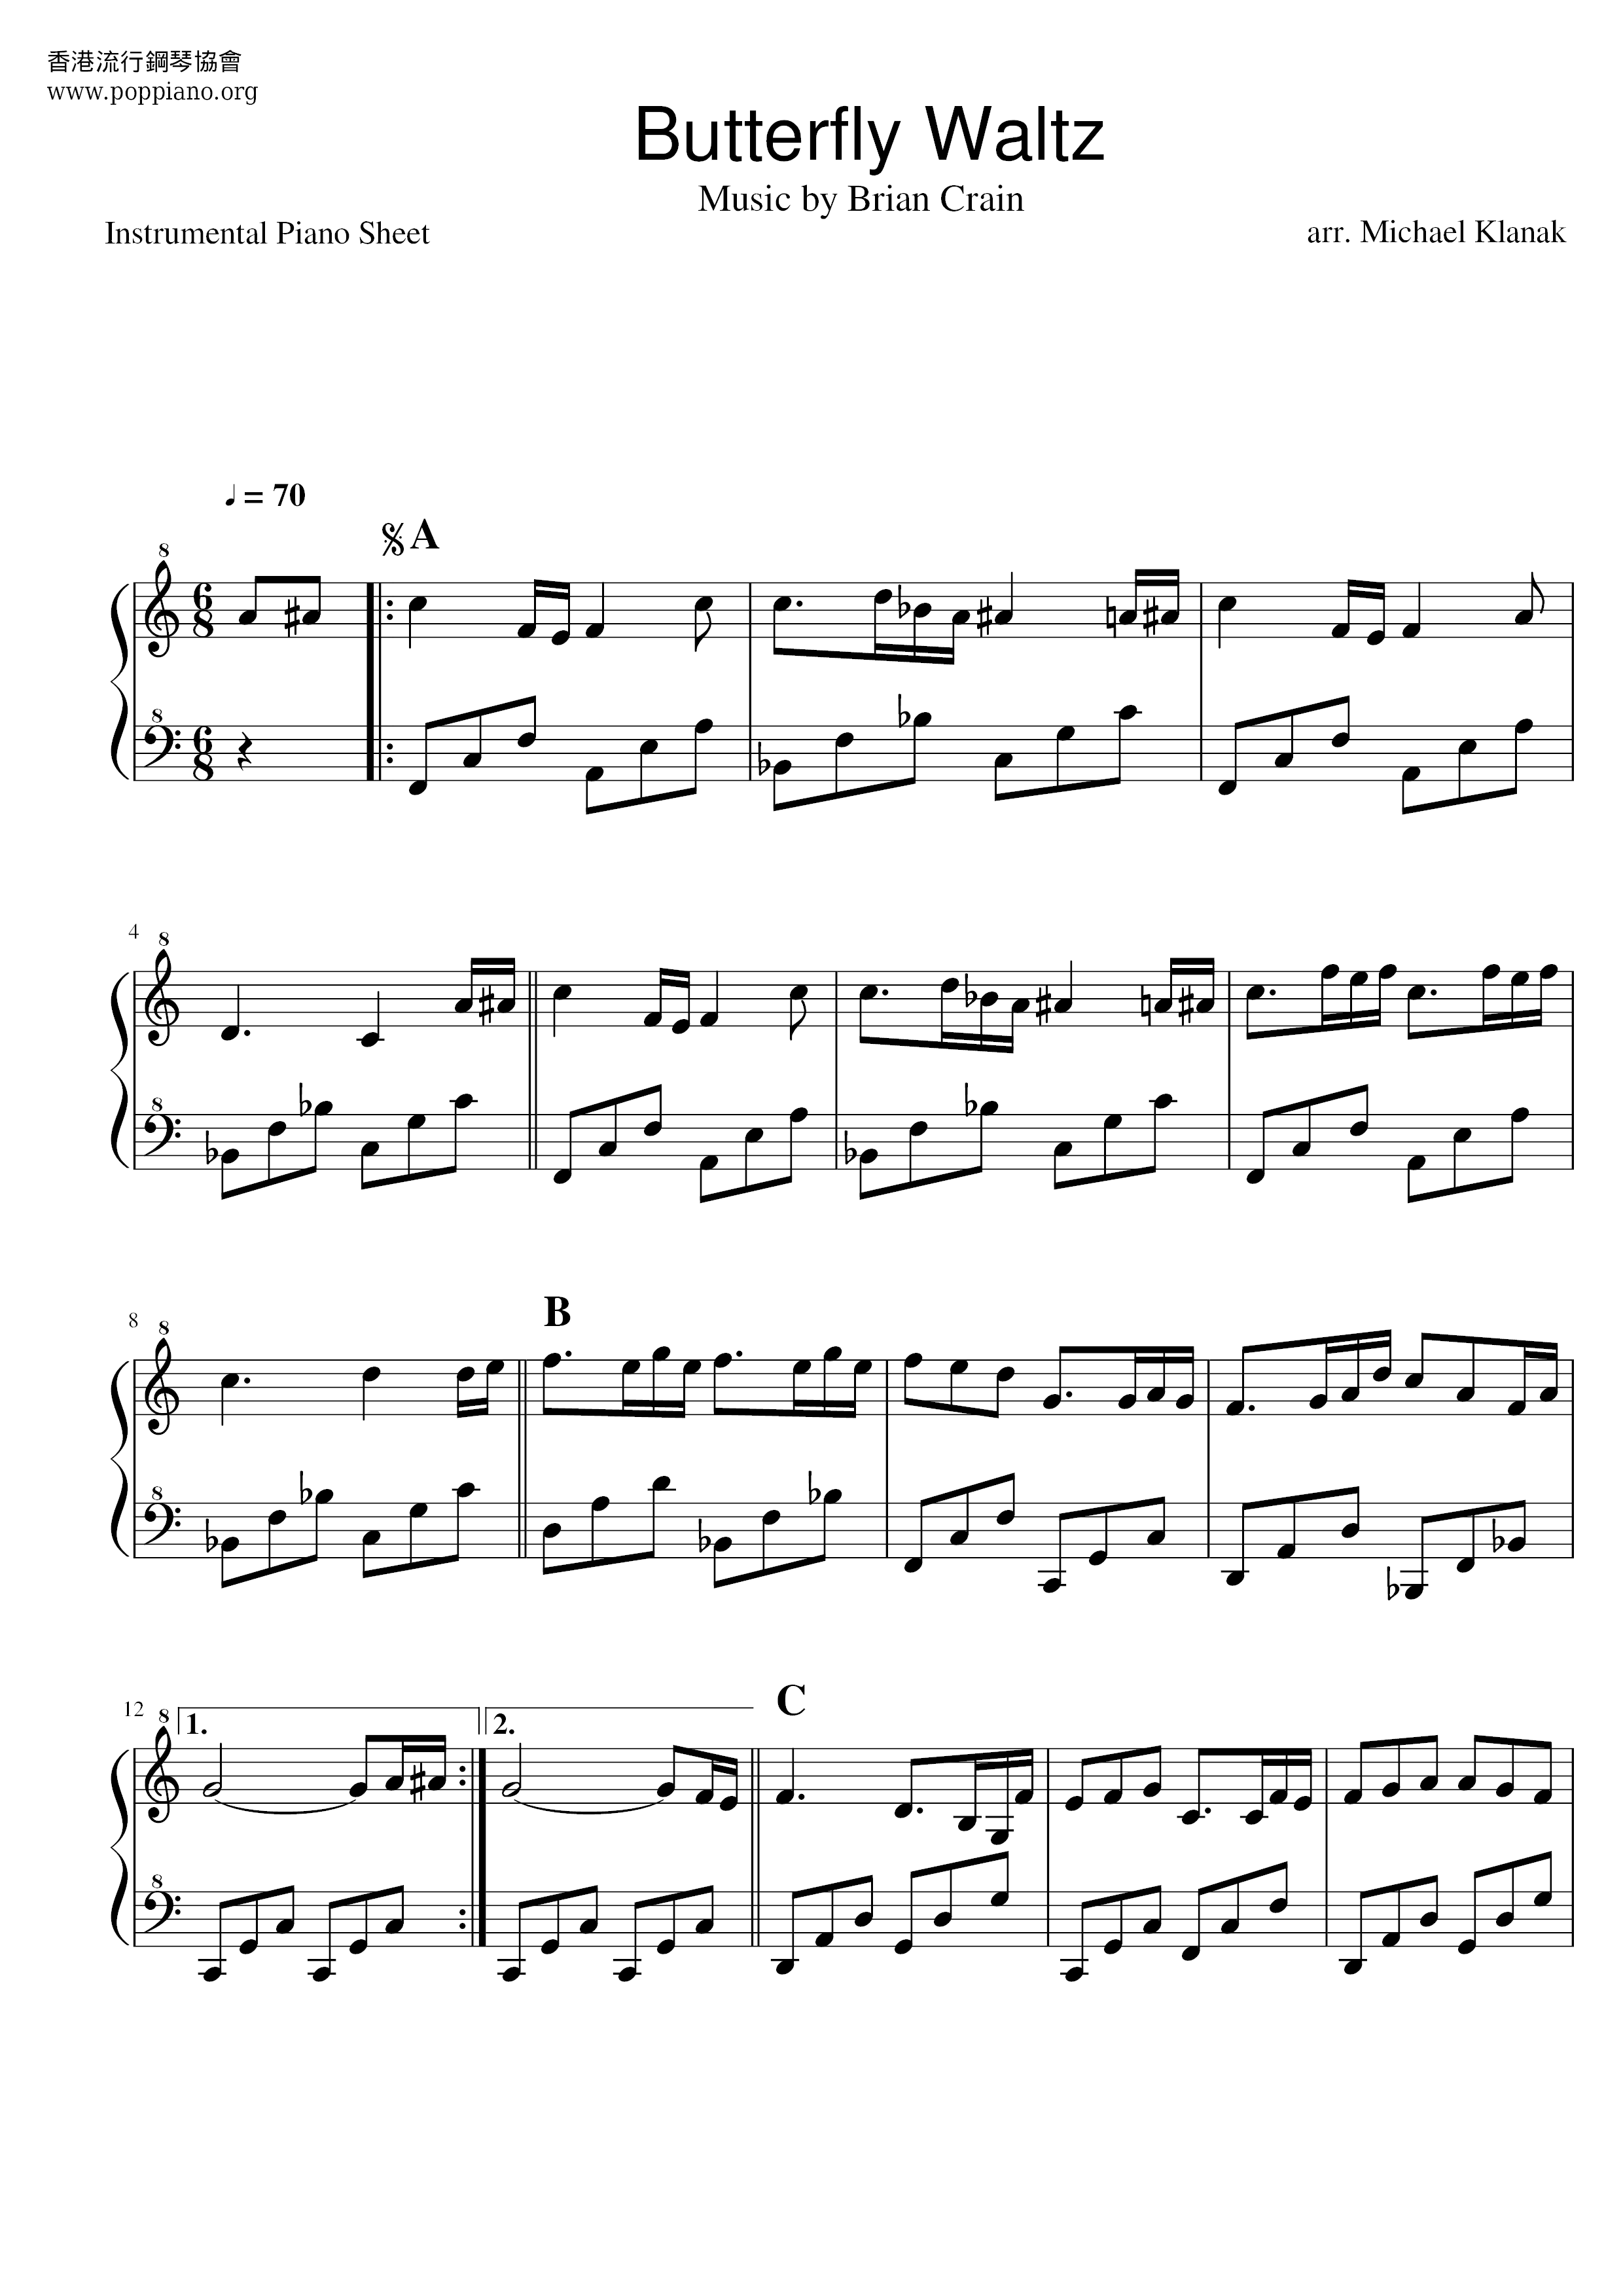 Butterfly Waltz Score